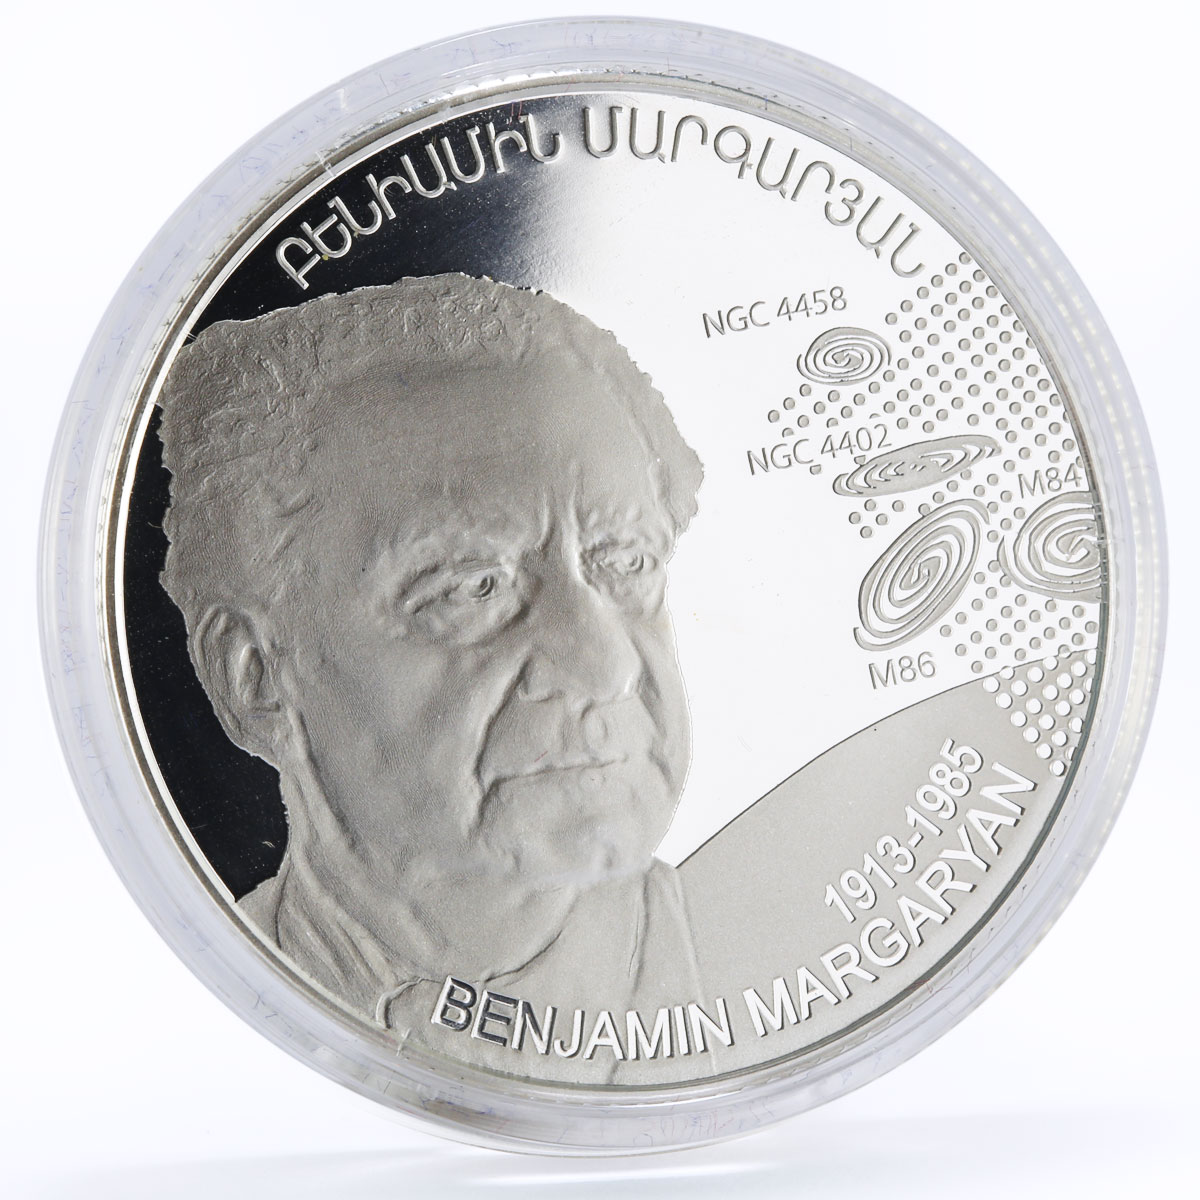 Armenia 1000 drams 100th Anniversary of Benjamin Margaryan silver coin 2013